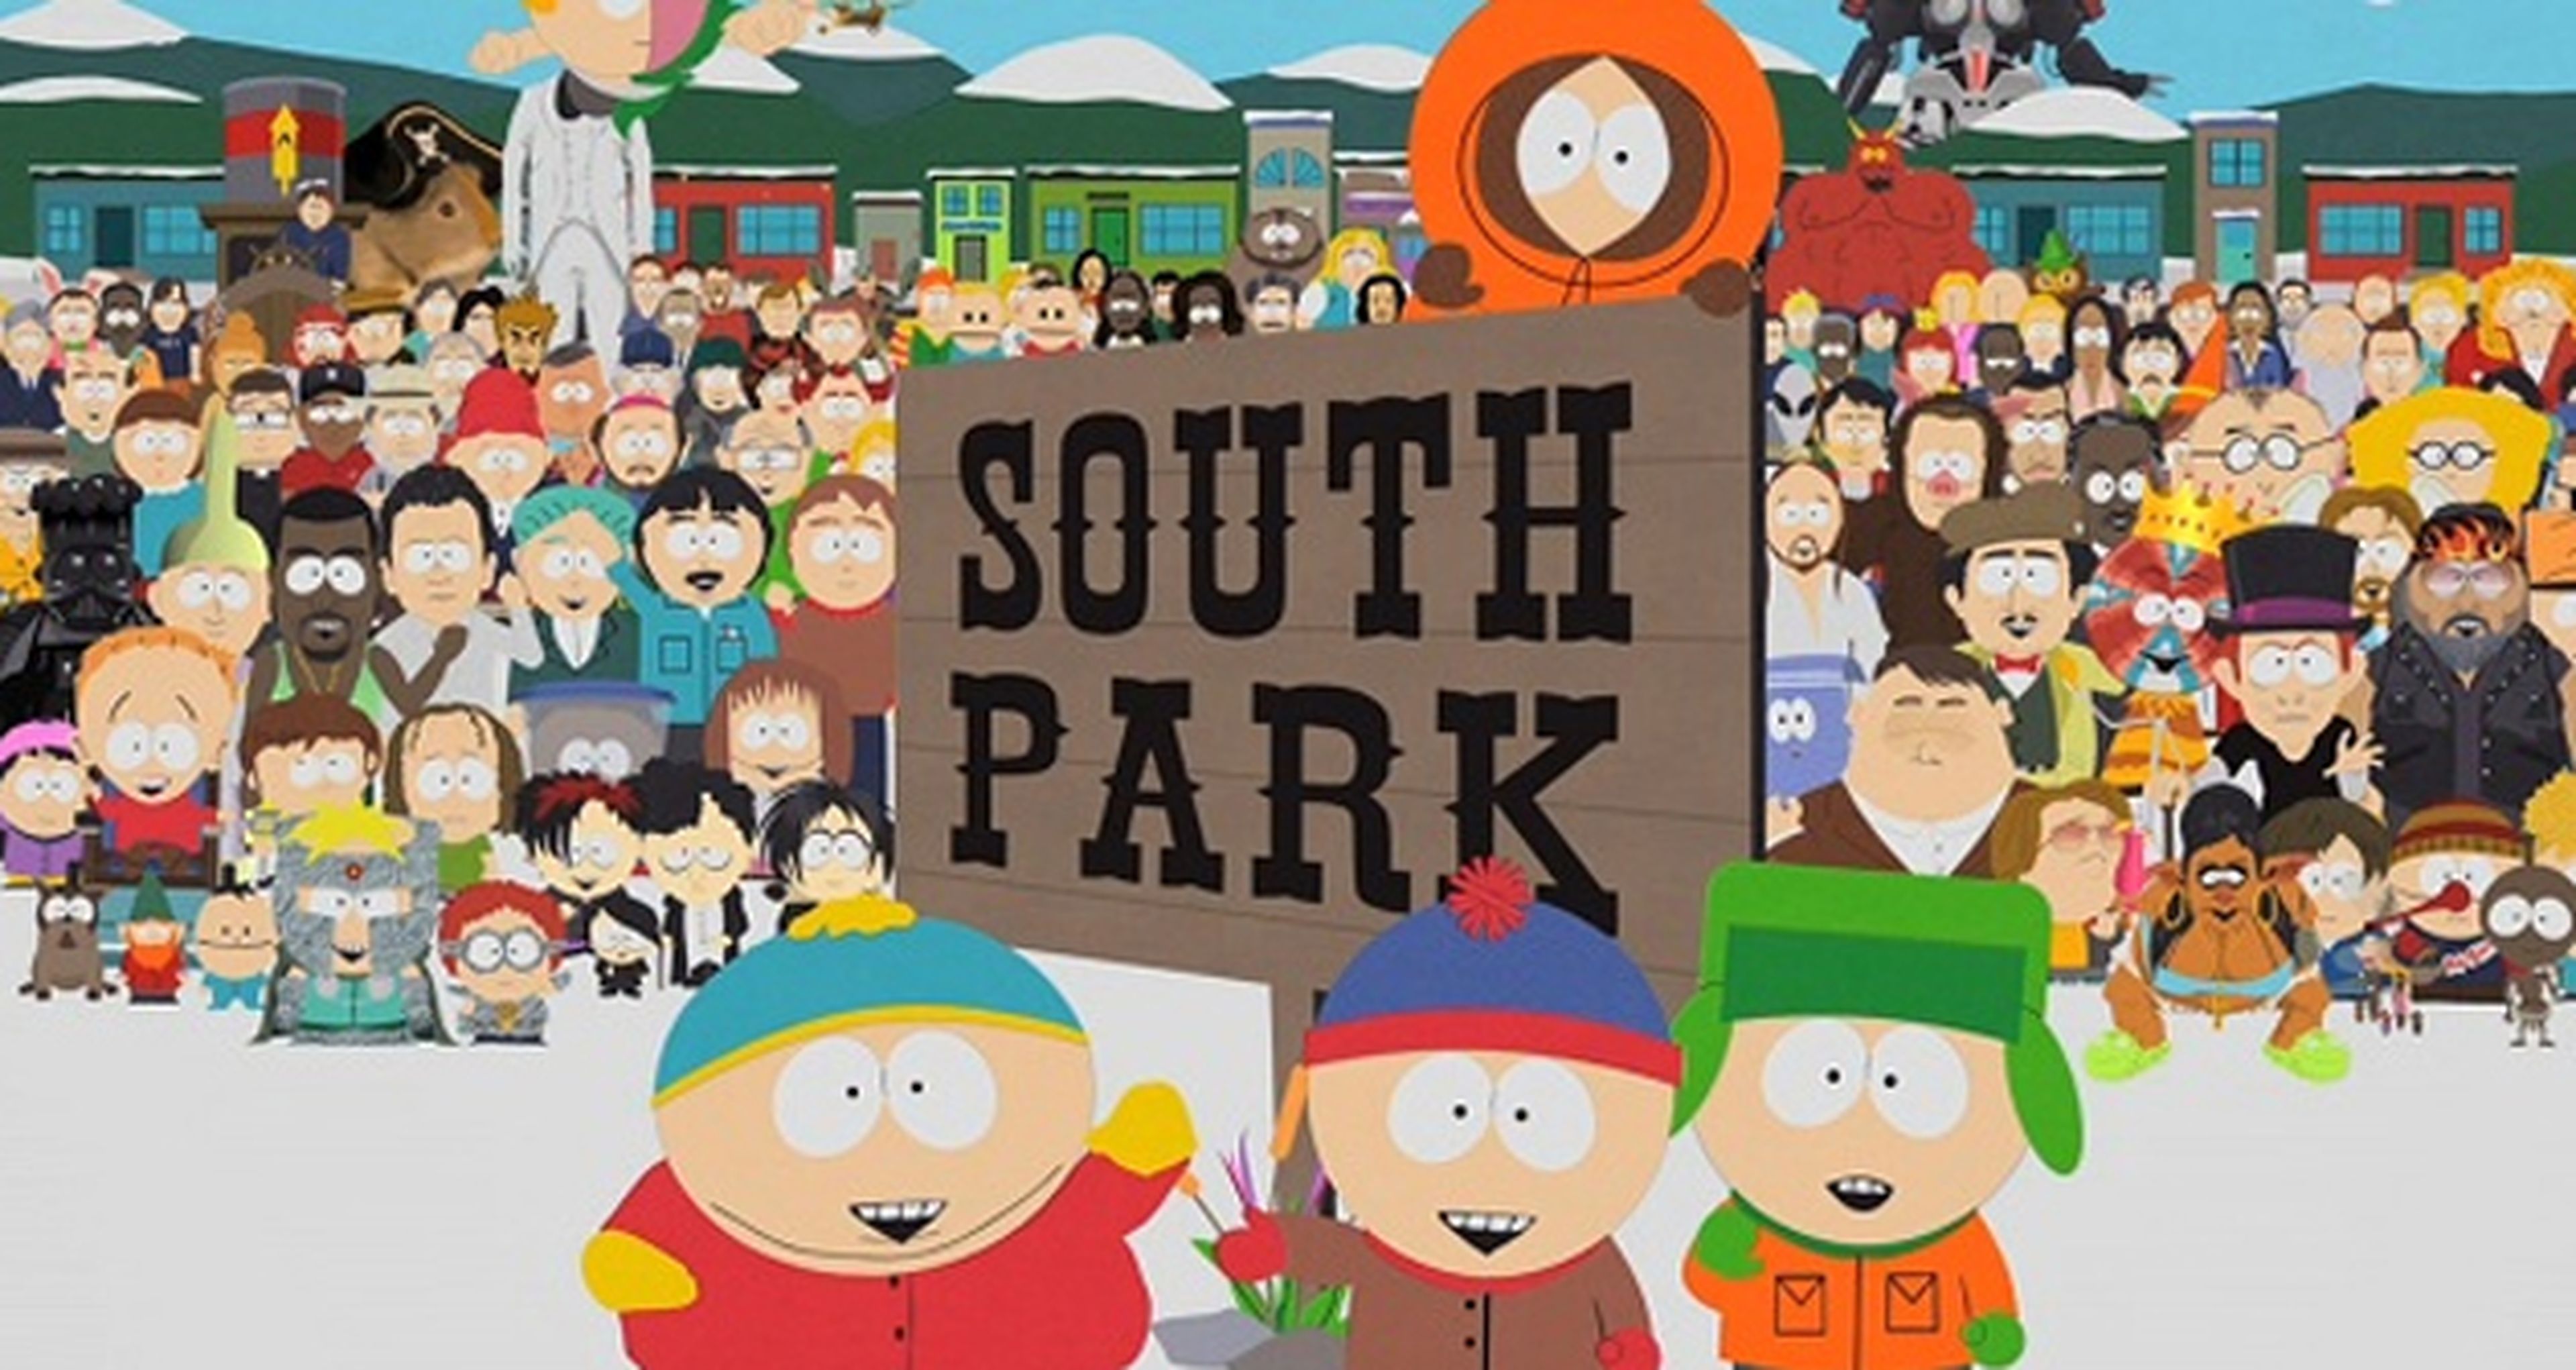 Mañana comienza la 17ª temporada de South Park